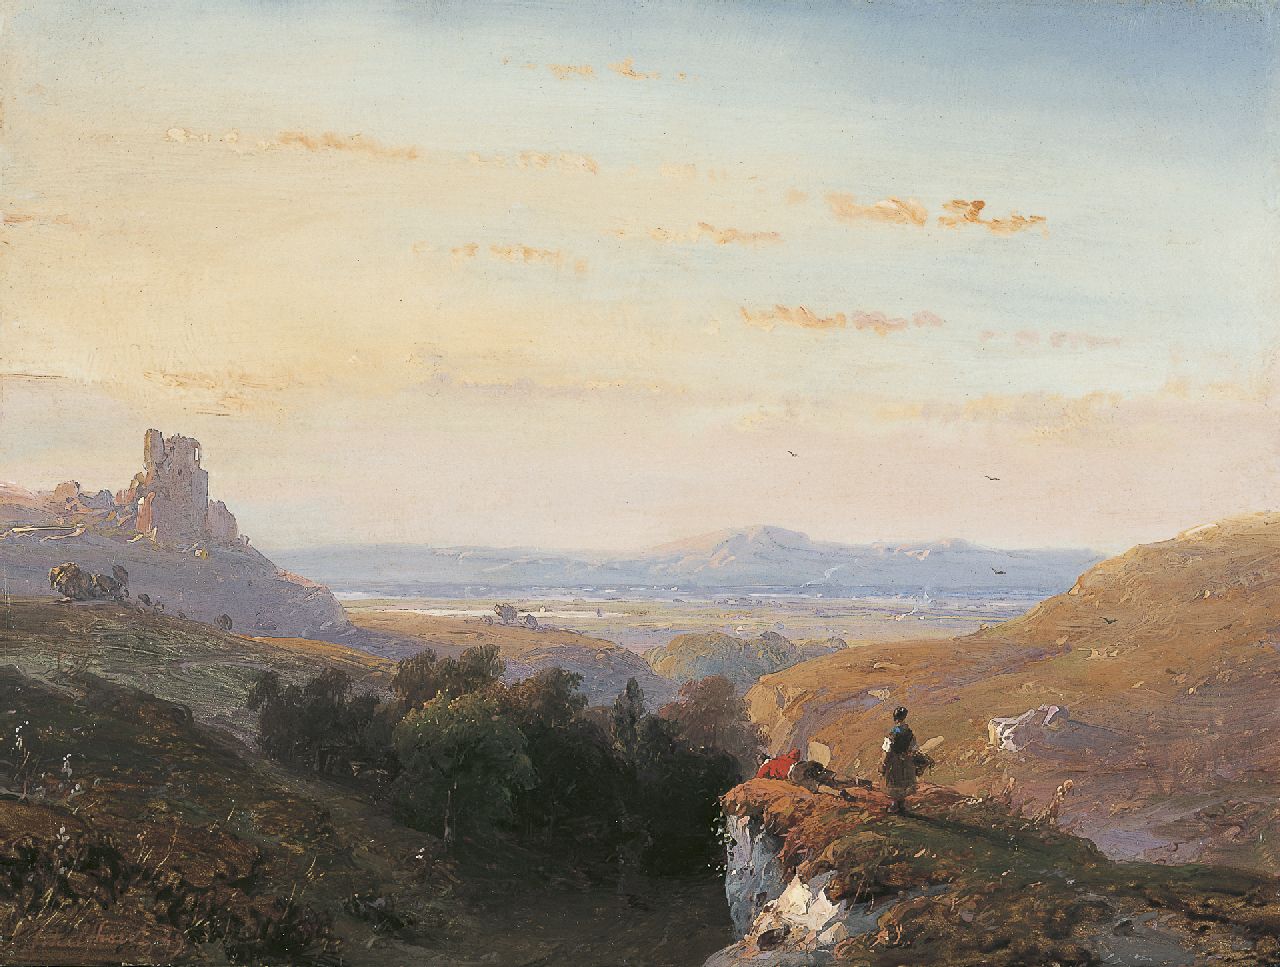 Schelfhout A.  | Andreas Schelfhout, Landvolk aan de rand van een rotskloof in weids landschap, olieverf op paneel 21,5 x 28,8 cm, gesigneerd linksonder en gedateerd '49